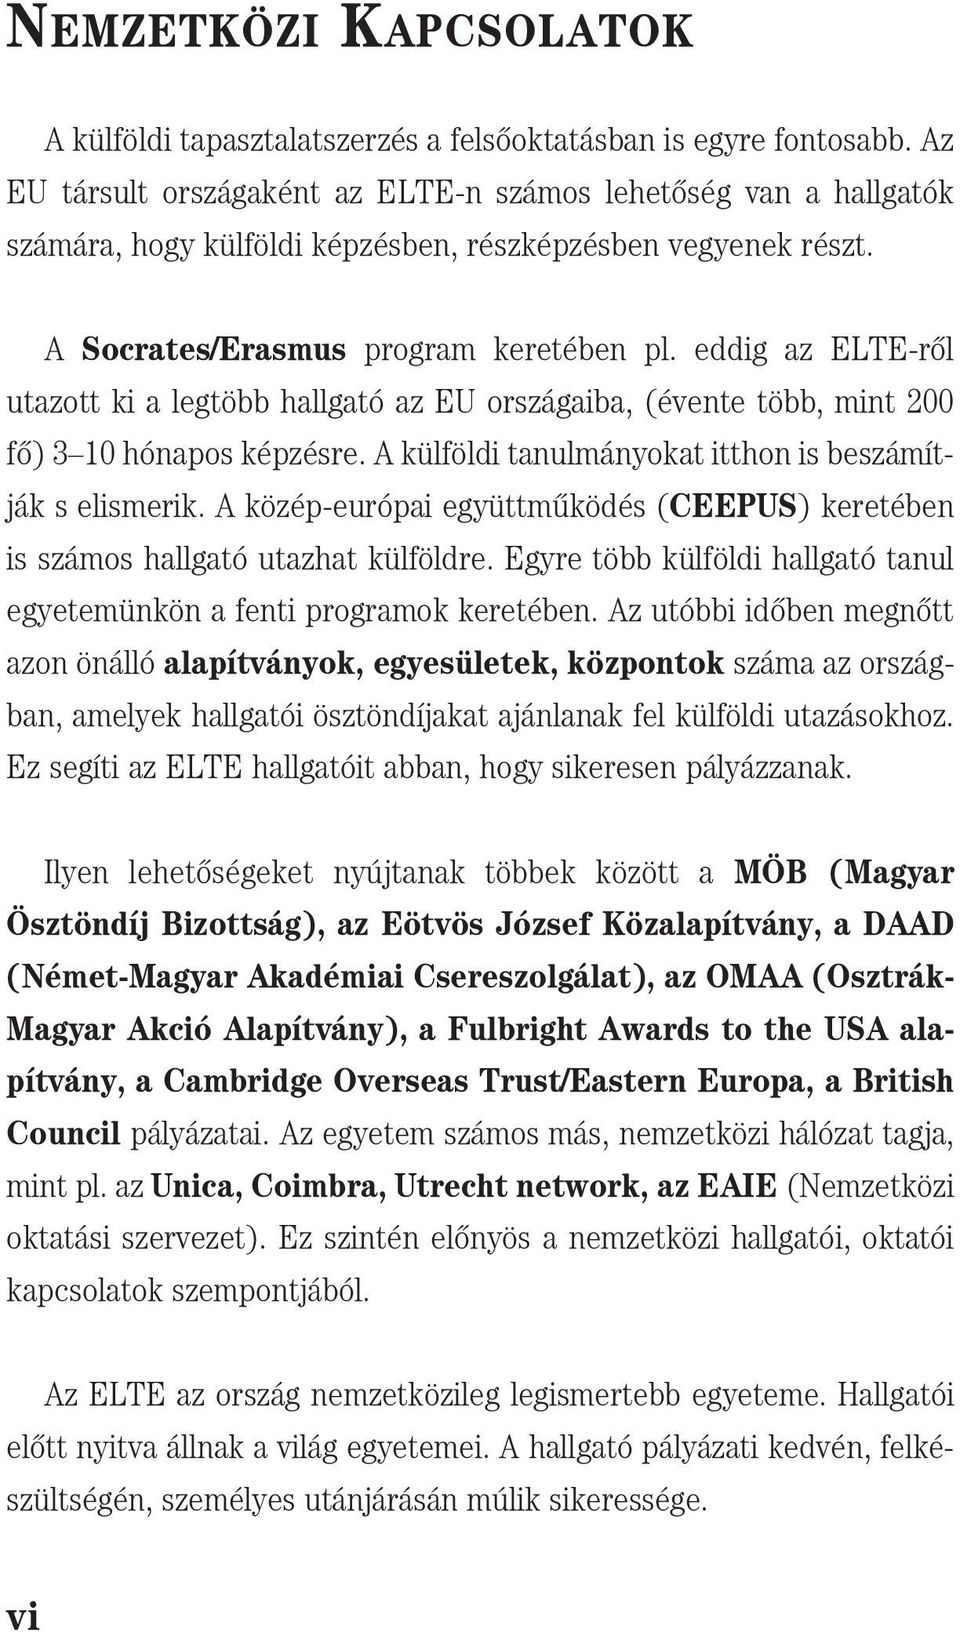 eddig az ELTE-r[l utazott ki a legtöbb hallgató az EU országaiba, (évente több, mint 200 f[) 3 10 hónapos képzésre. A külföldi tanulmányokat itthon is beszámítják s elismerik.